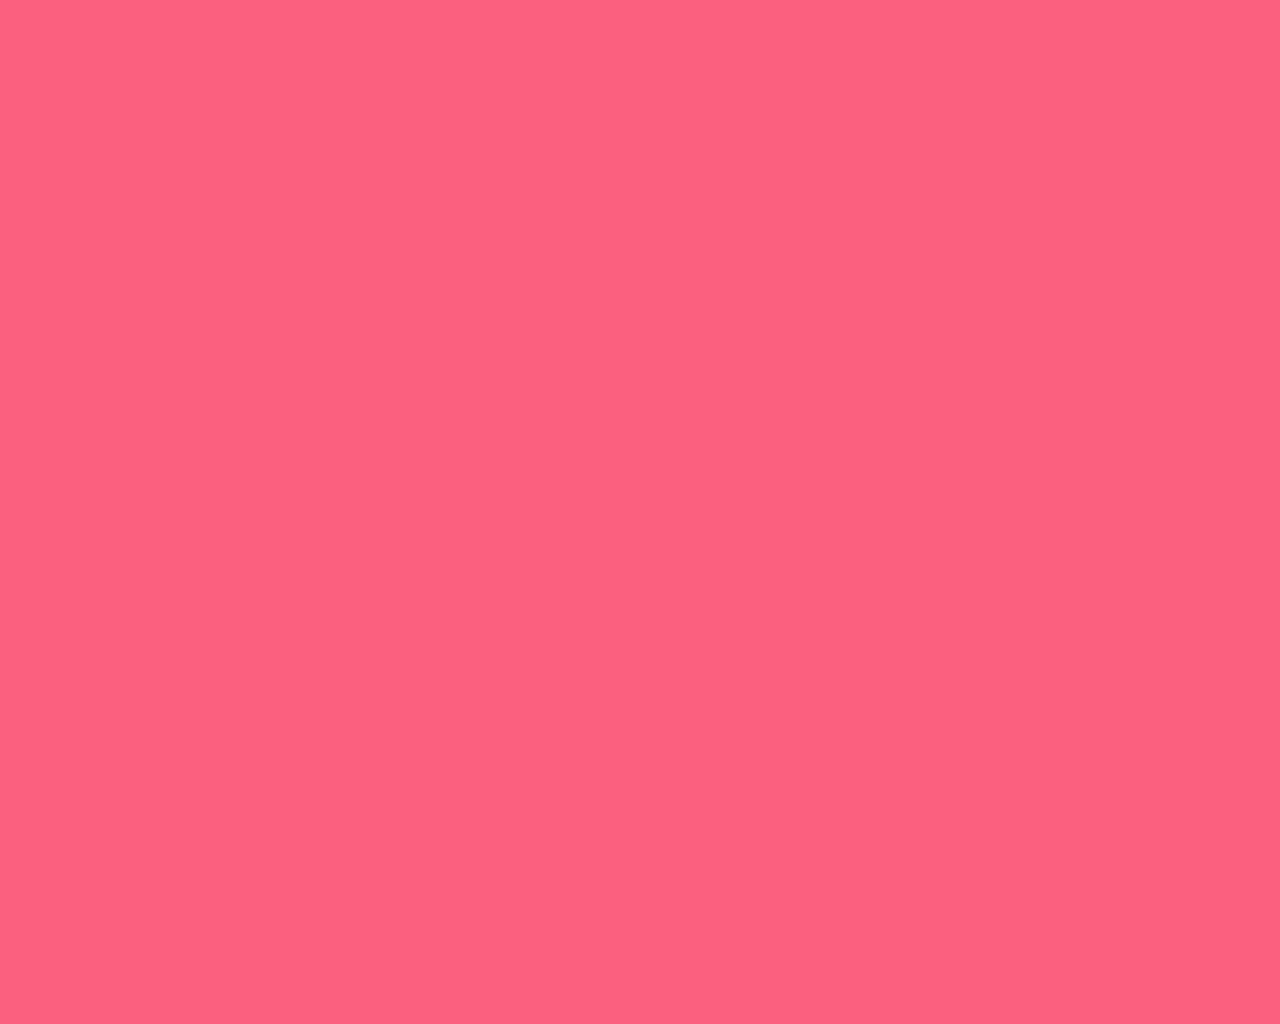 1280x1024 Brink Pink Solid Color Background